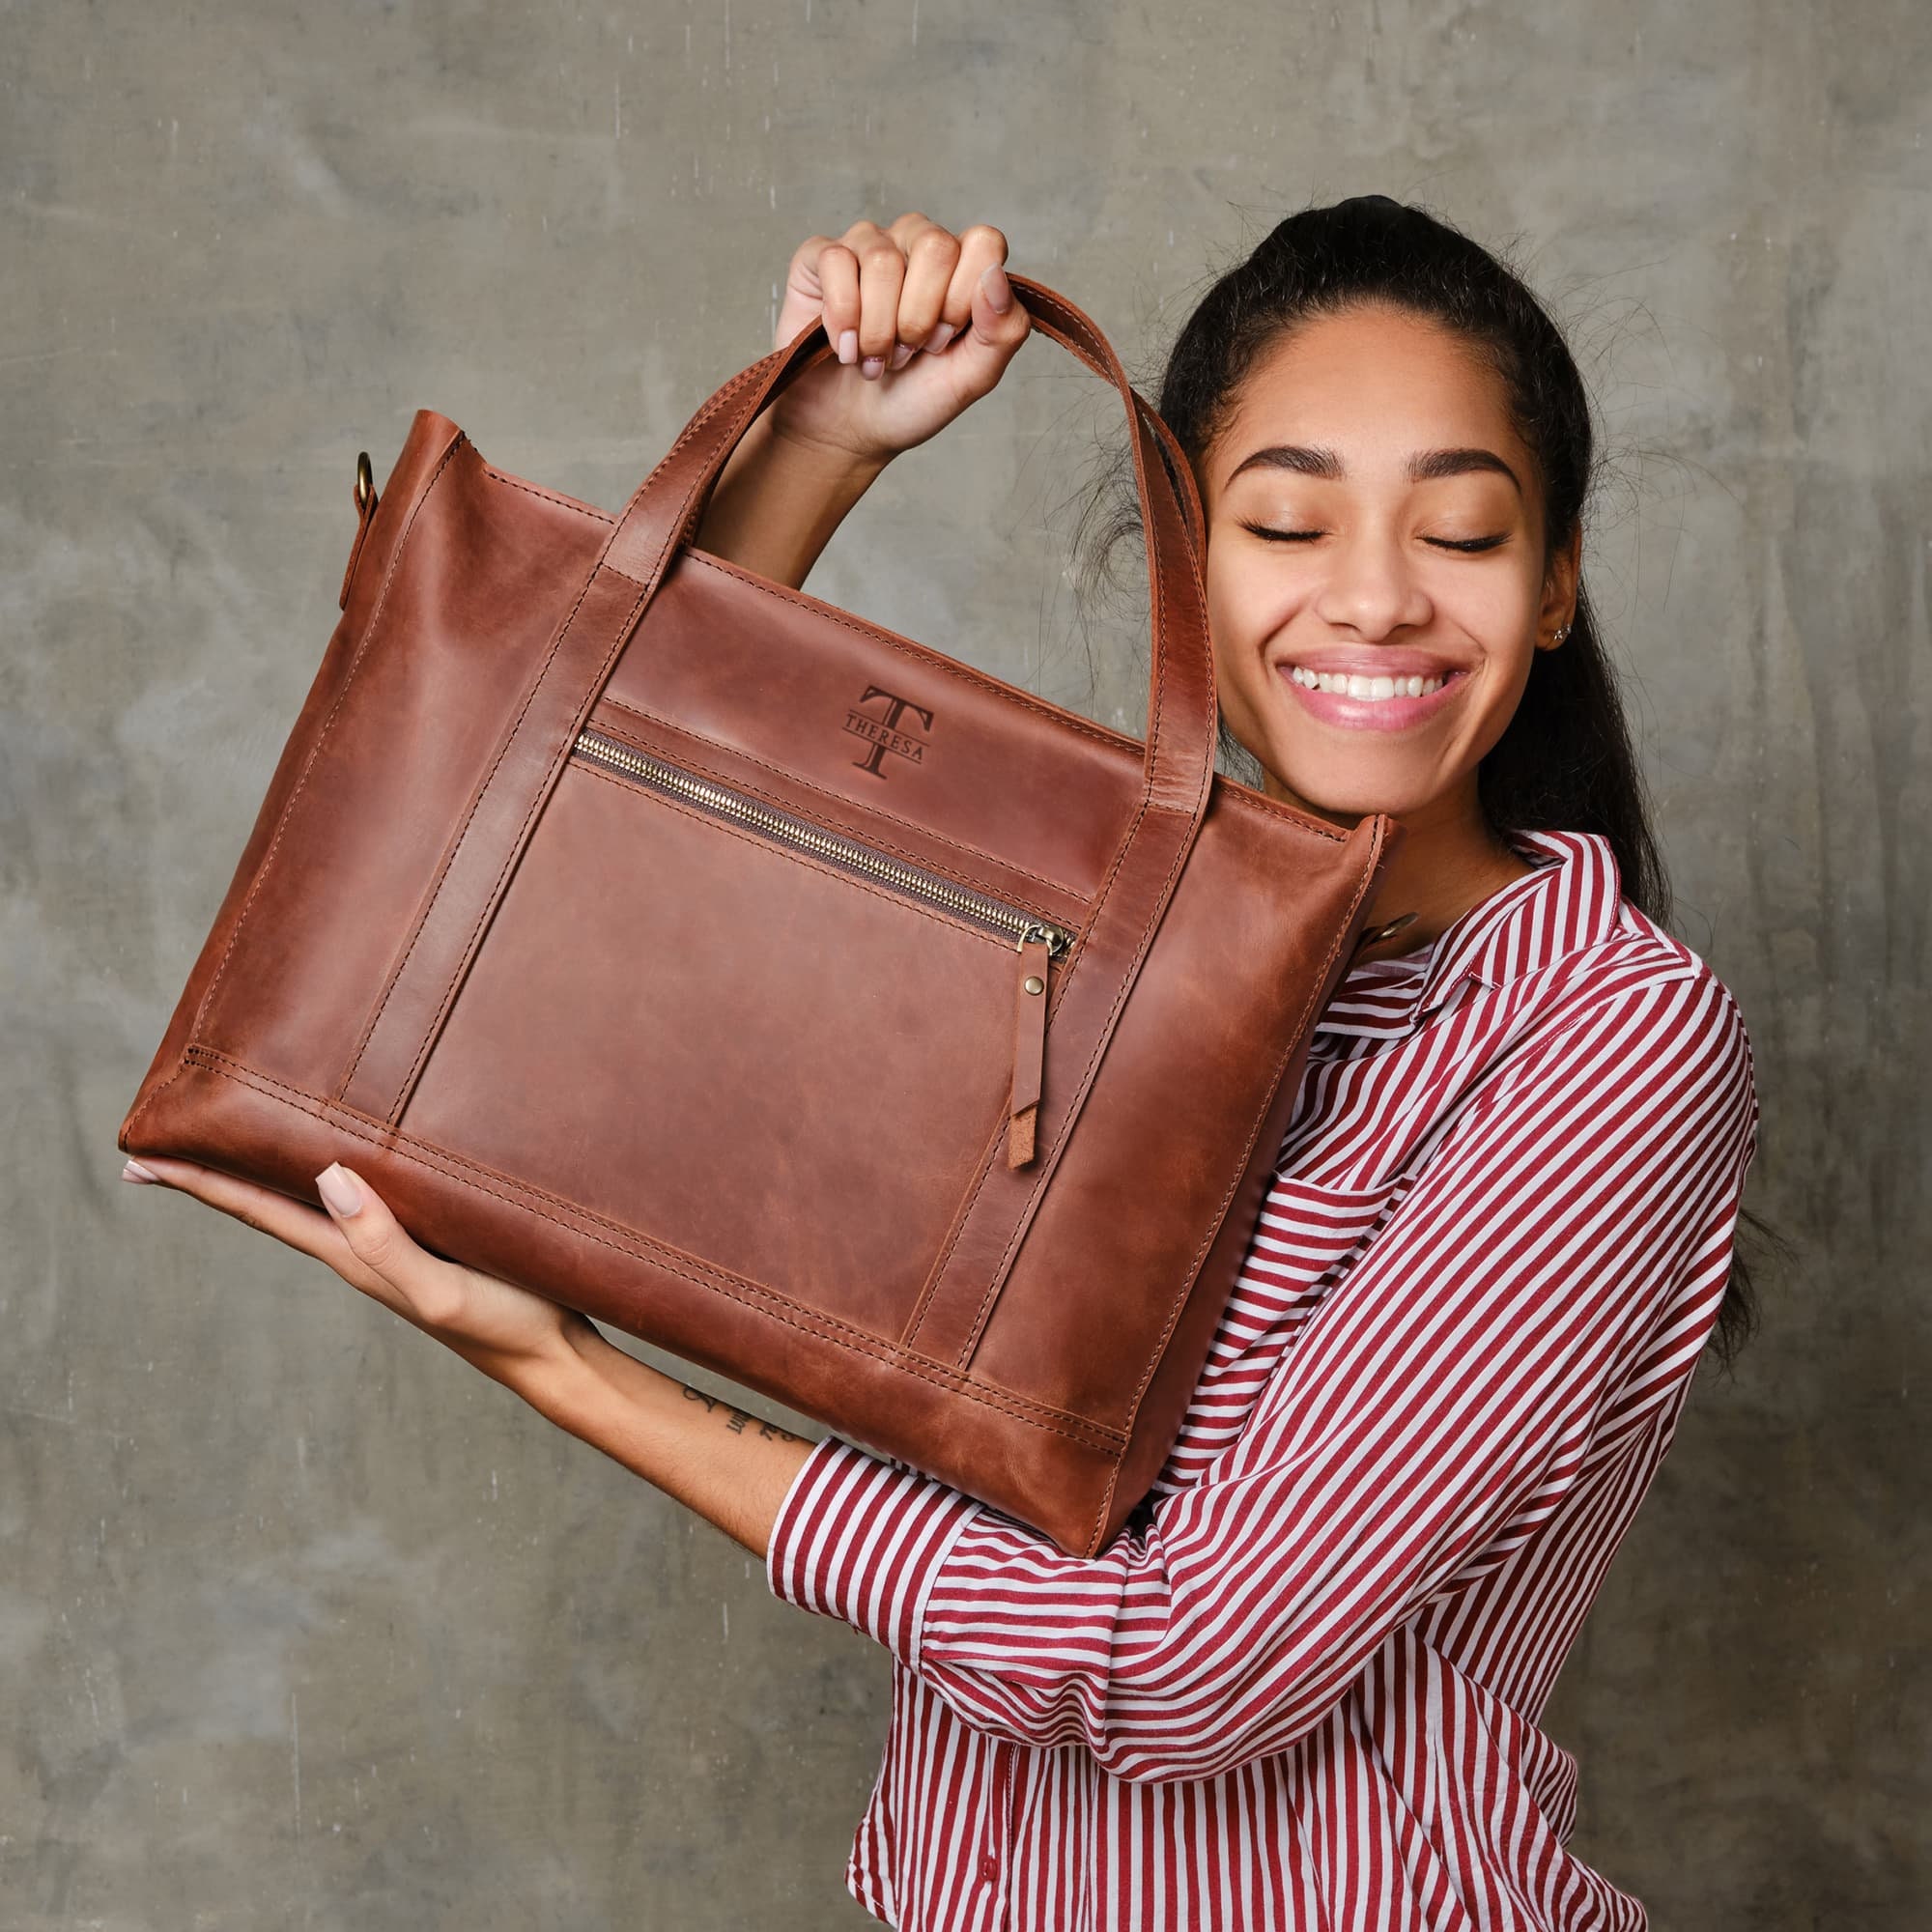 Quickie & Nippie Zippie Purse – Sew Modern Bags